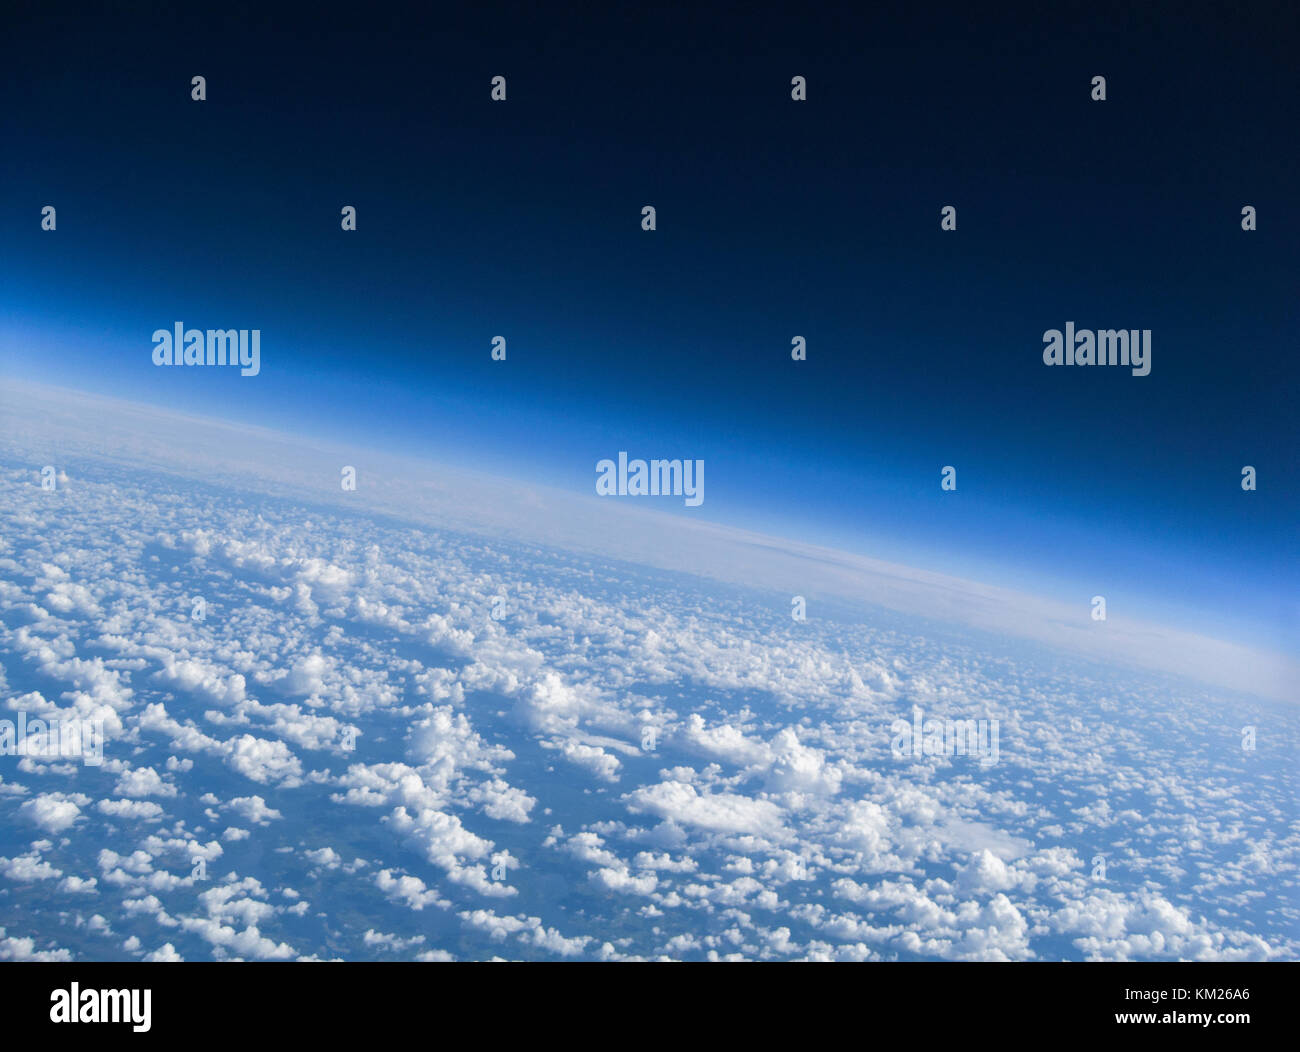 El horizonte y las nubes del planeta Tierra como se ve desde lo alto de esta imagen aérea tomada desde un globo meteorológico de gran altitud Foto de stock